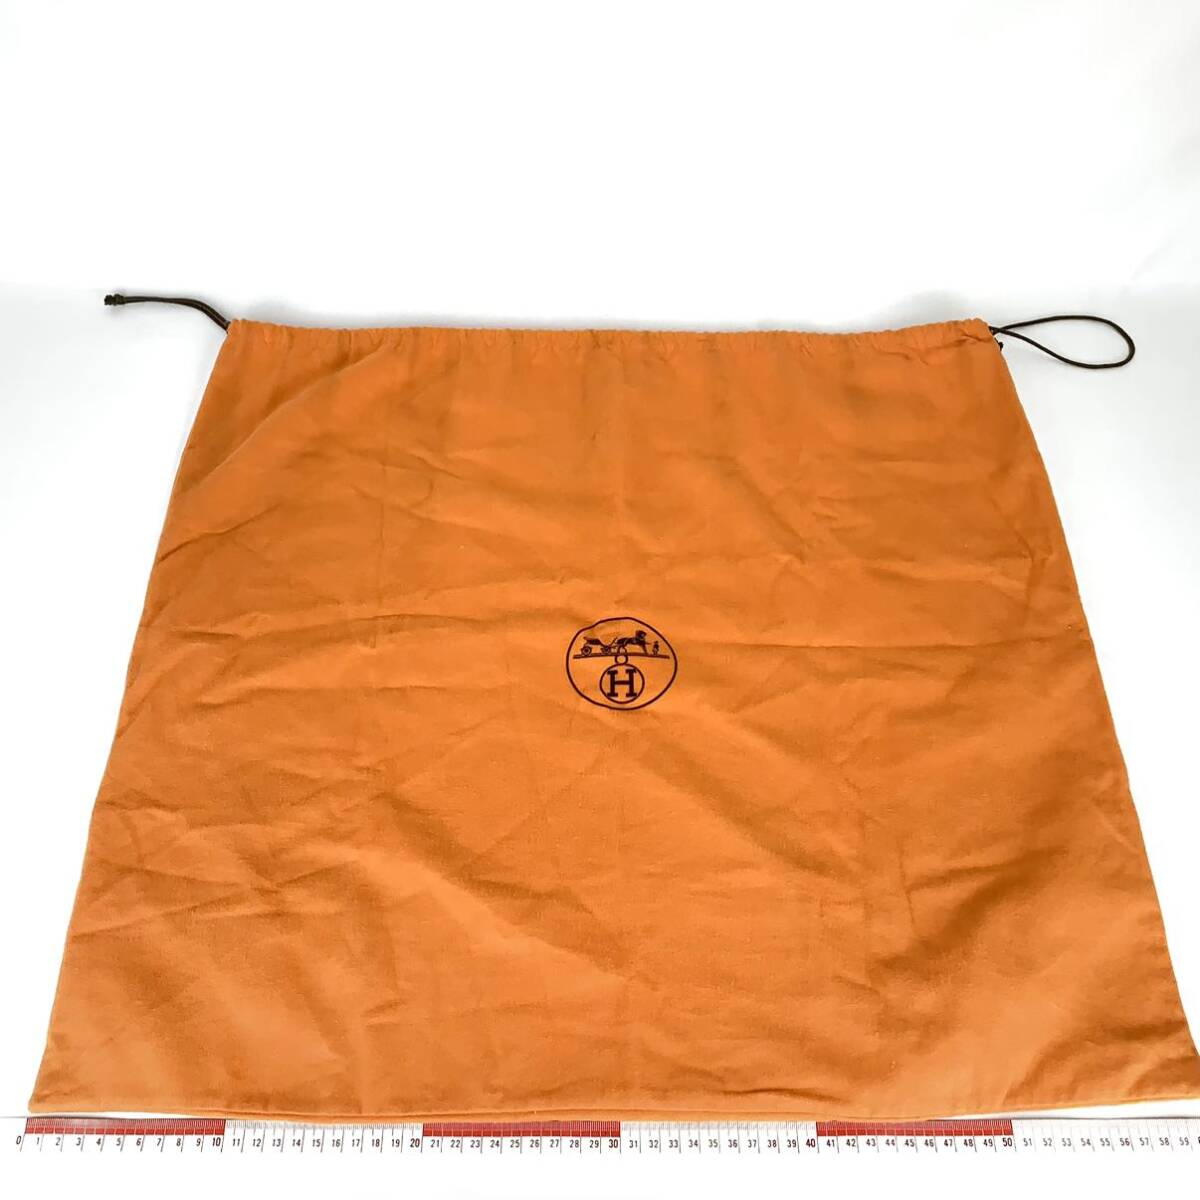 HERMES エルメス 保存袋 60×55 大型 特大旧型 巾着袋 付属品 バッグ用 袋 オレンジ_画像1